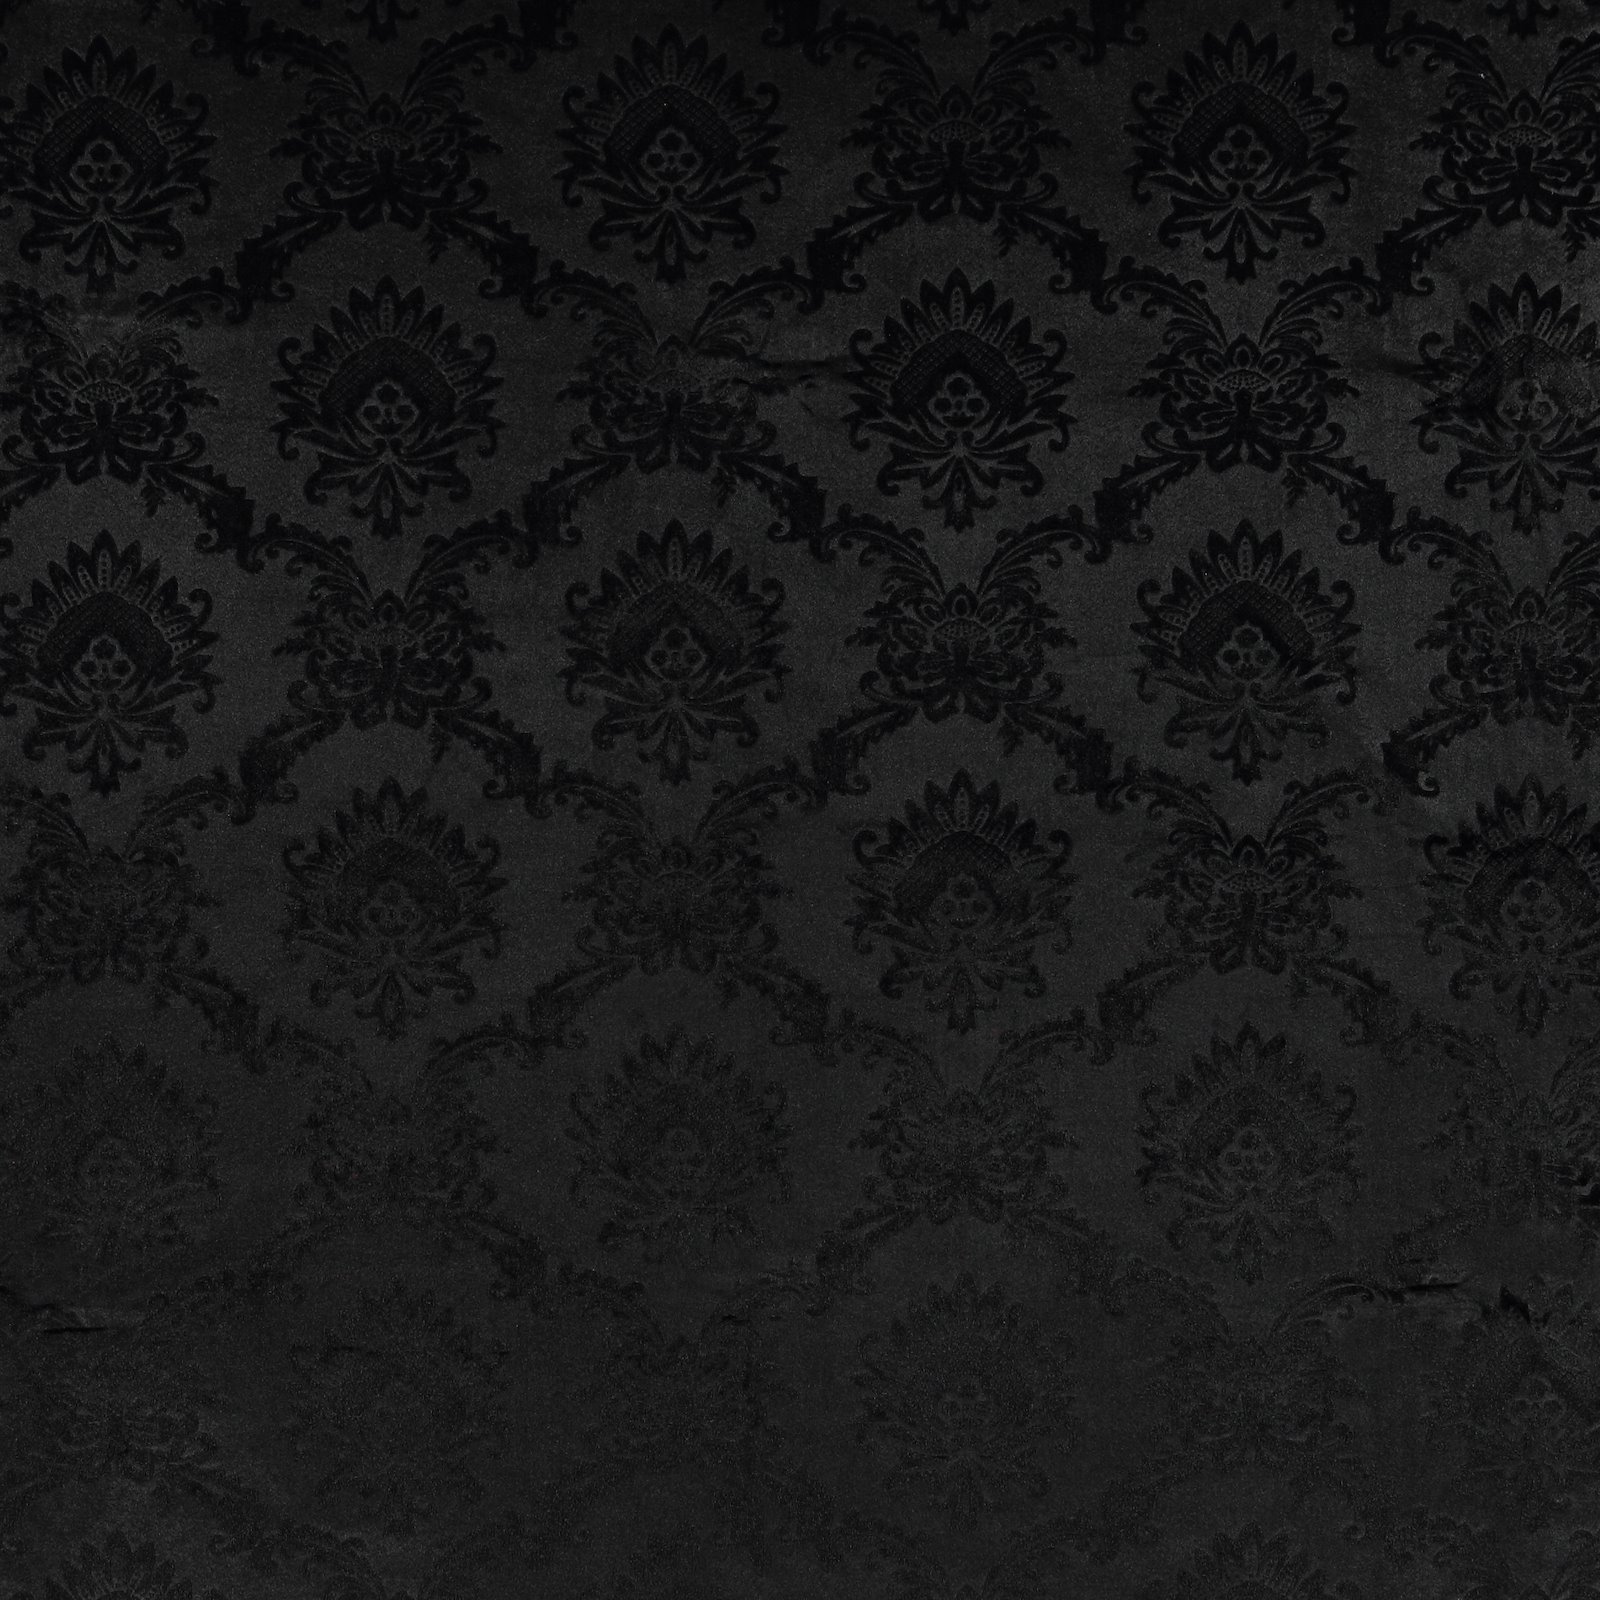 Embossed velvet black w wallpaper look